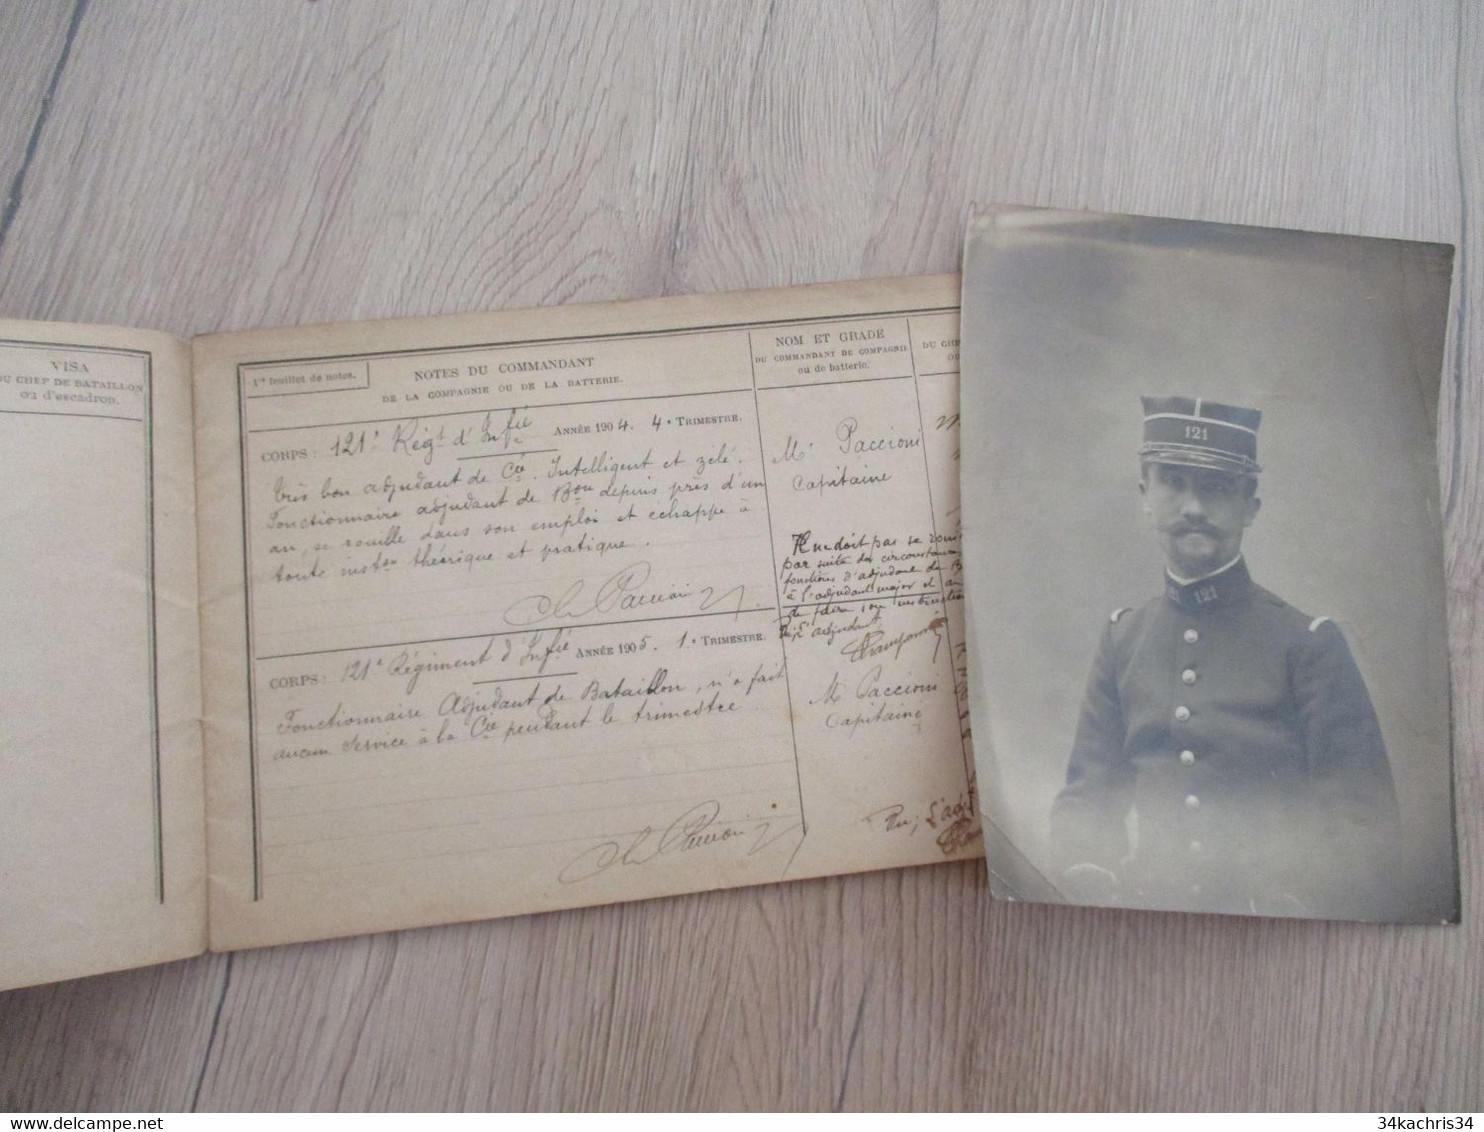 Rare 121 ème Régiment Infanterie Avec Photo Champonnier Carnet De Notes 12 P Manuscrites De Commentaires Su Officier.... - Dokumente